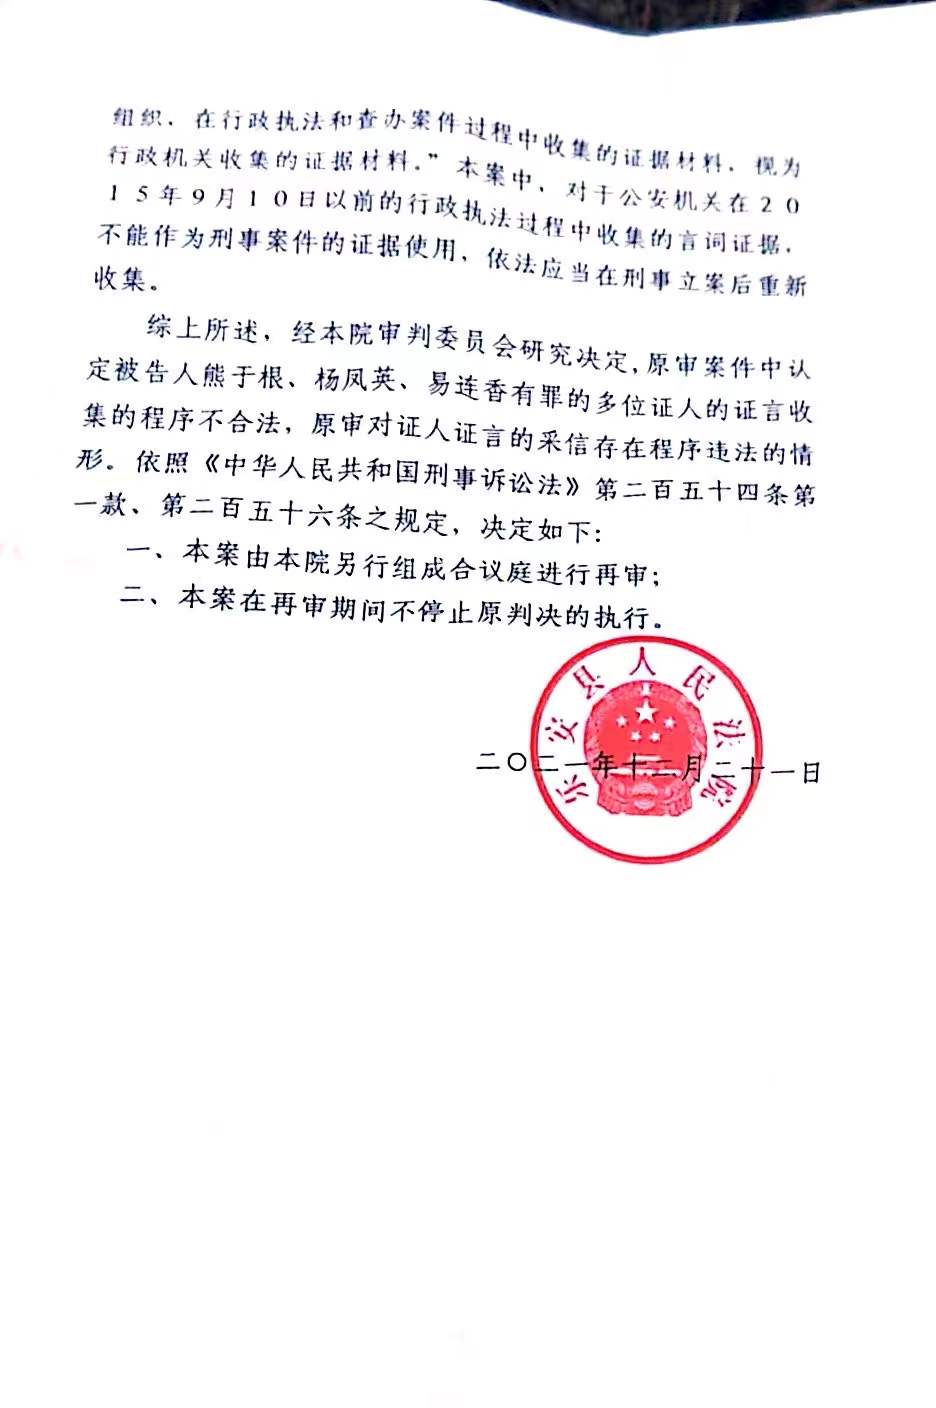 乐安县法院12月21日作出的再审决定书 受访者 供图